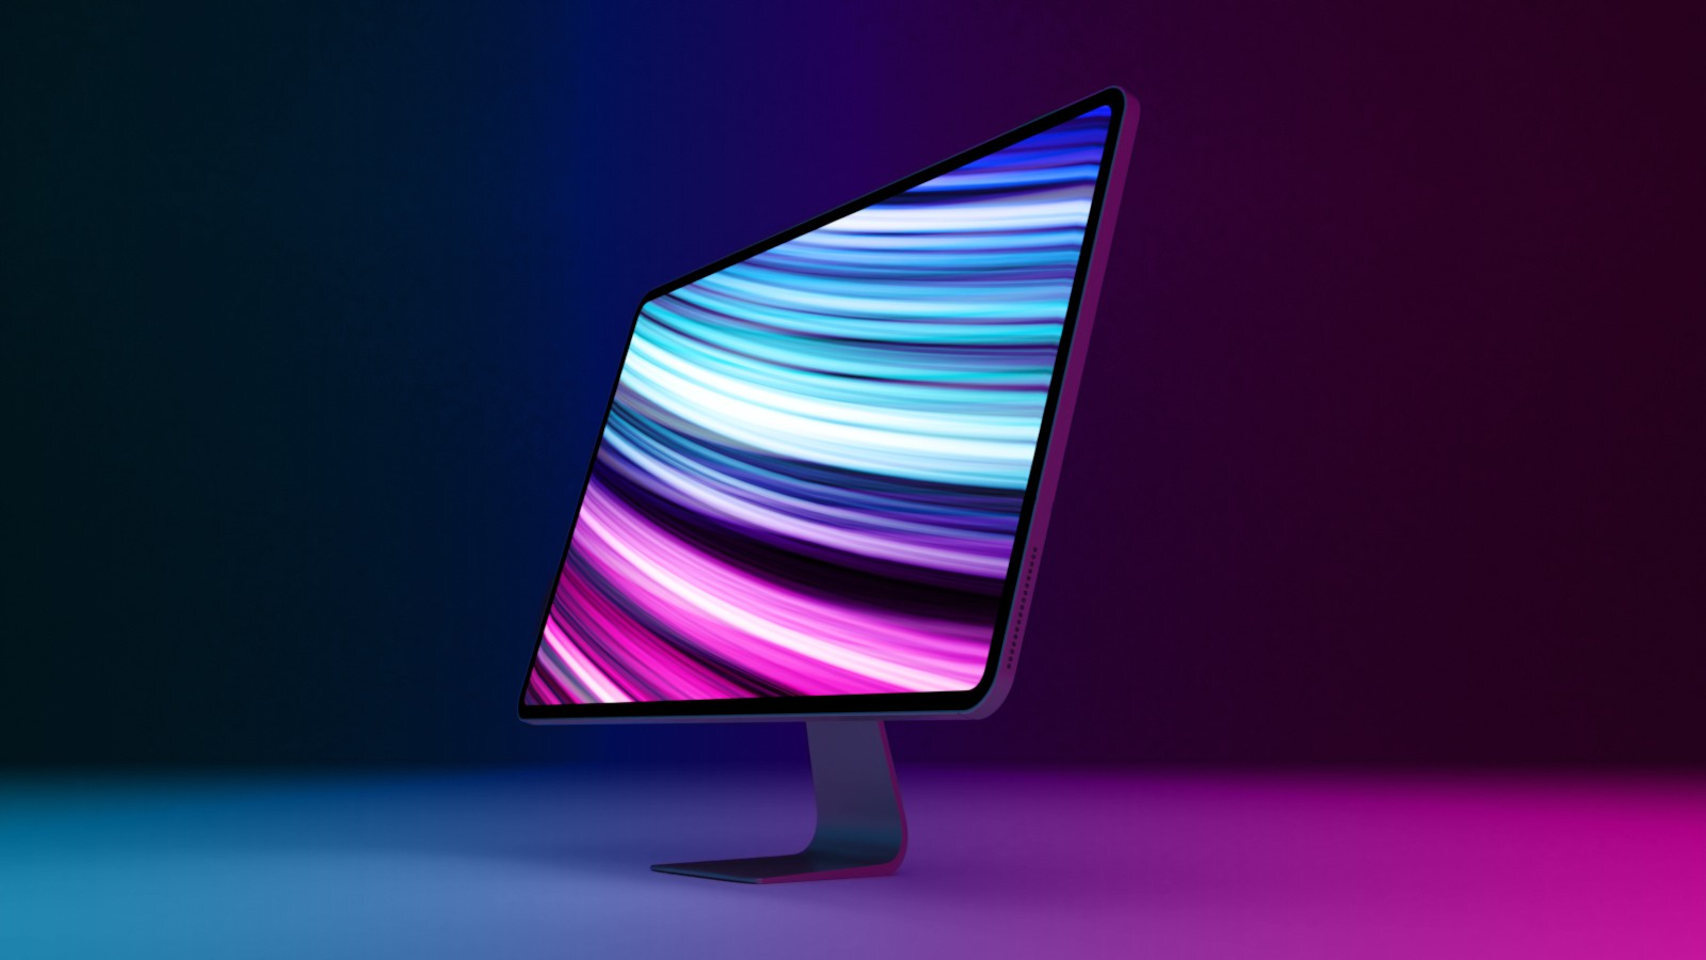 Potential new 2022 iMac design (render by MacRumors)